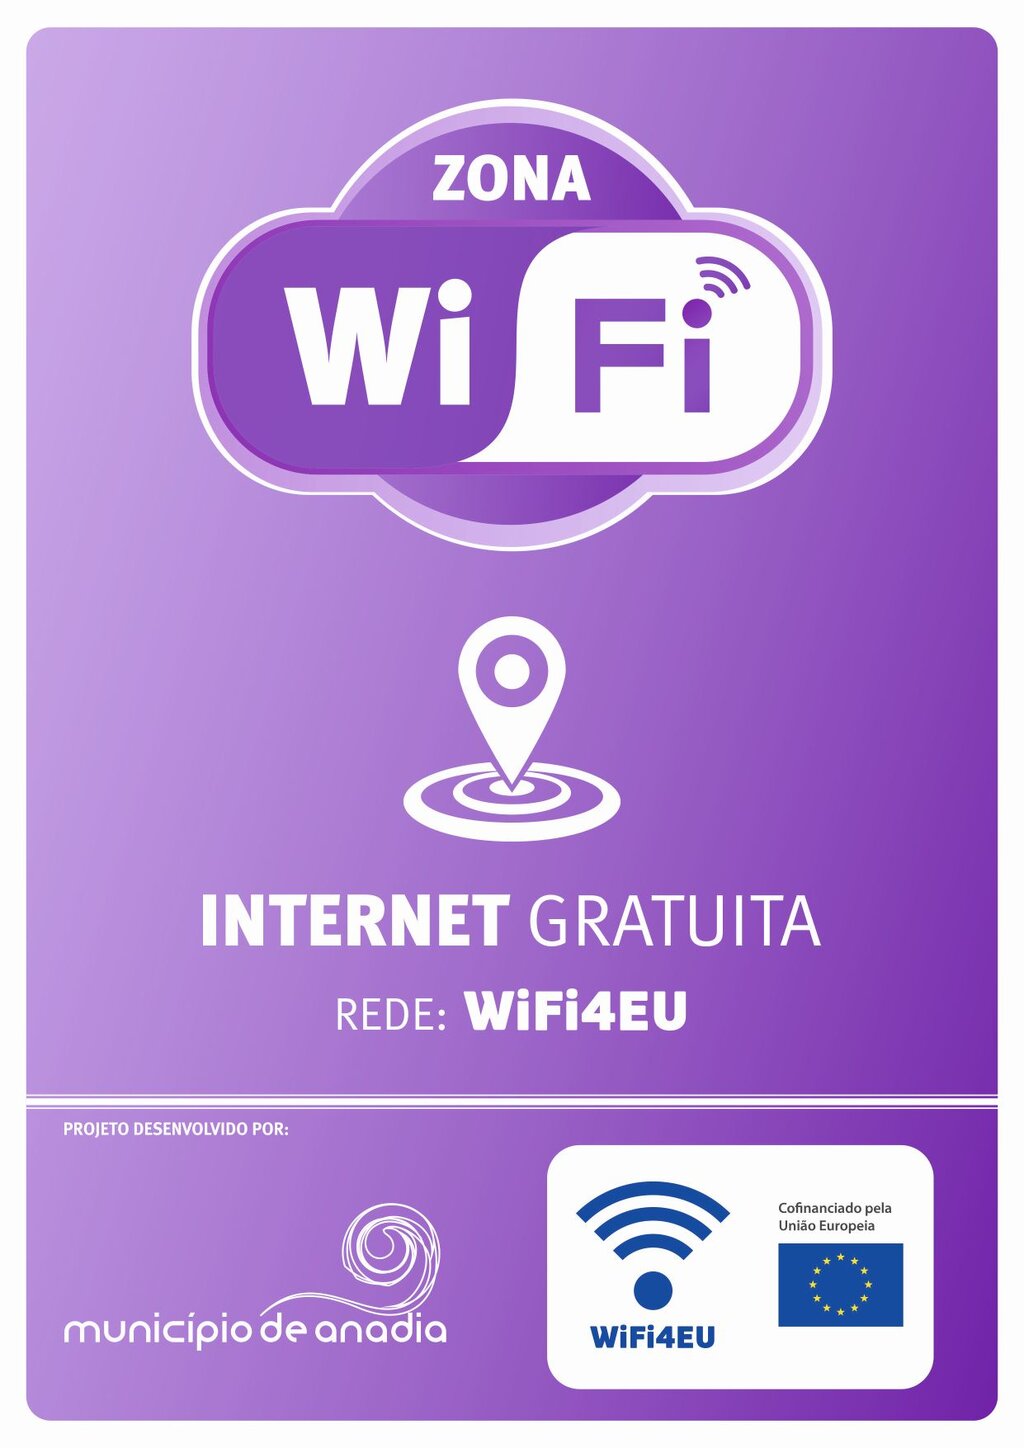 WiFi4EU - Internet gratuita em espaços públicos